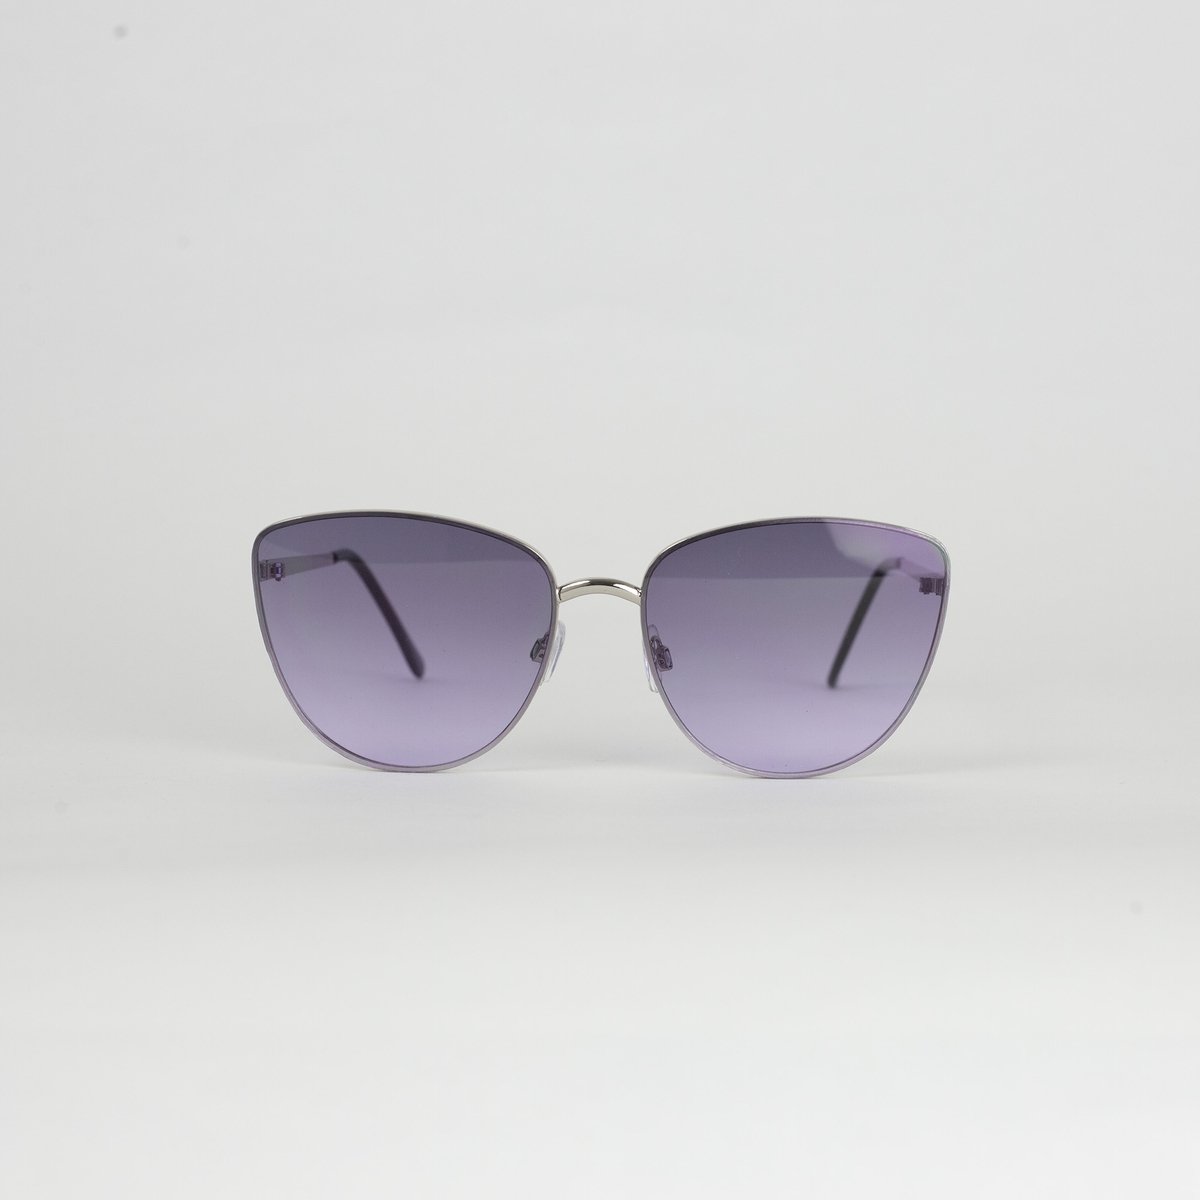 Goudkleurige cat eye zonnebril | Dames/unisex | roze lens